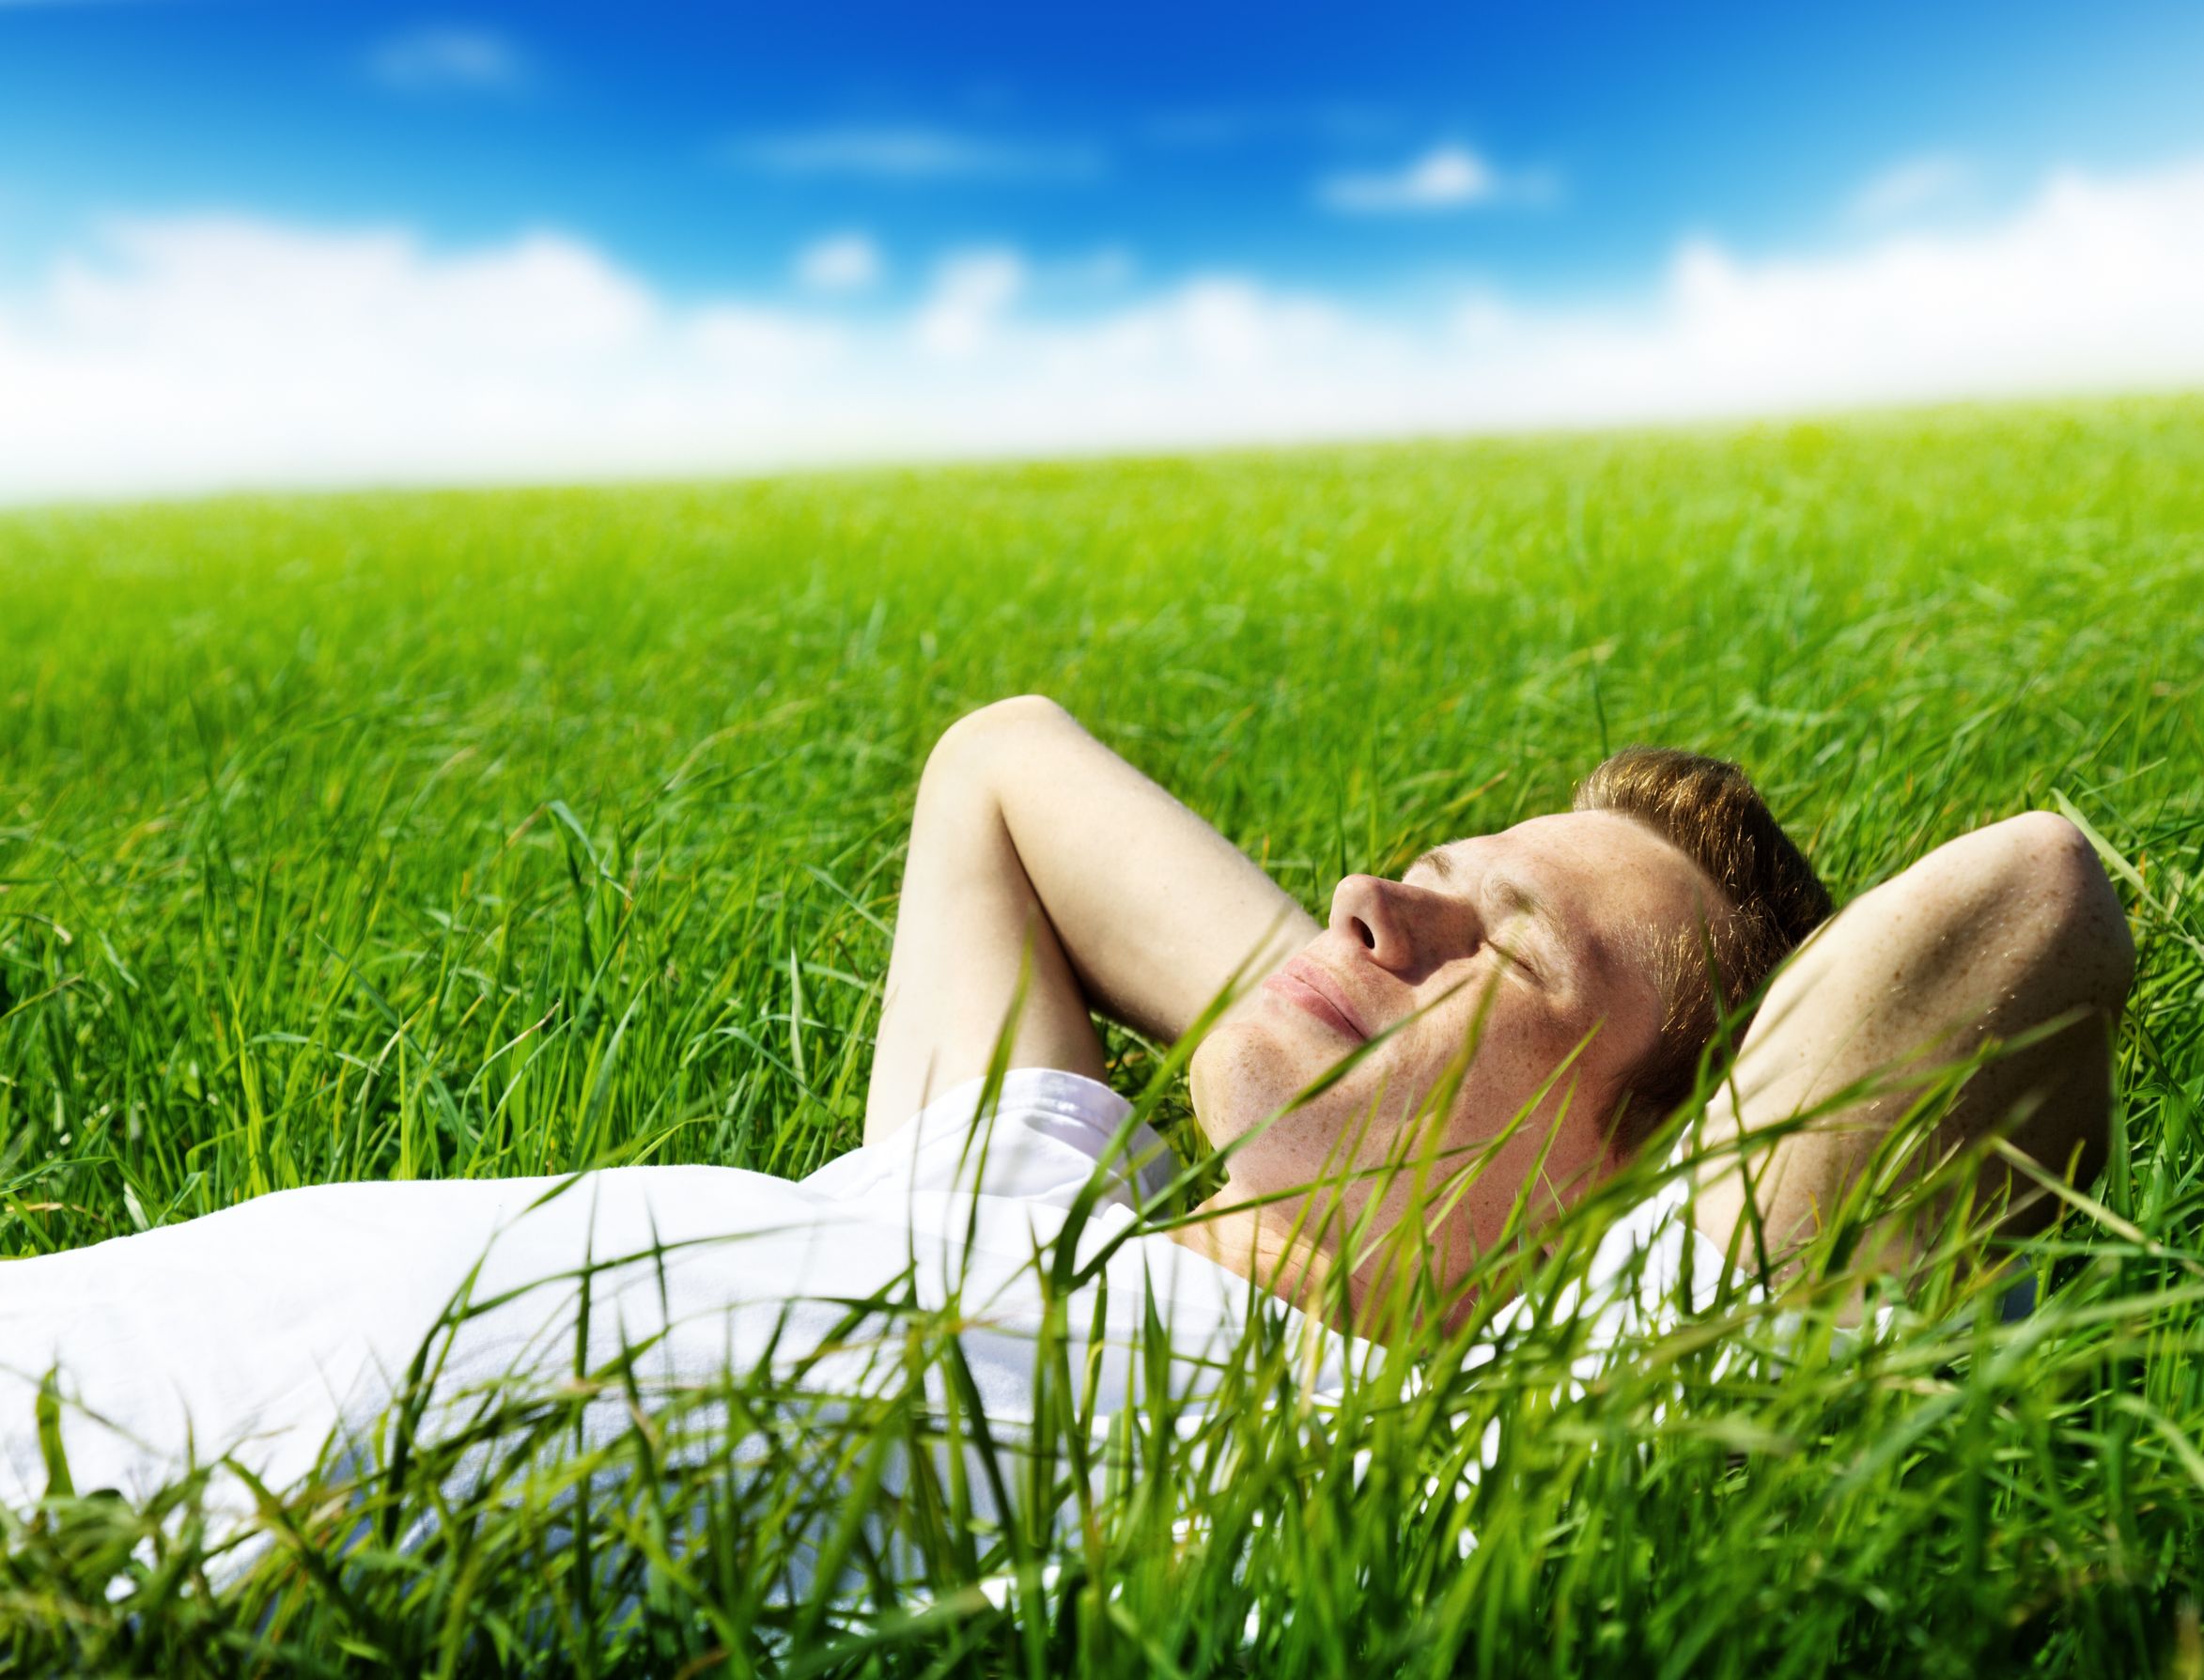 И расслабляться становится. Расслабление. Человек отдыхает. Лежит на траве. Мужчина лежит на траве.